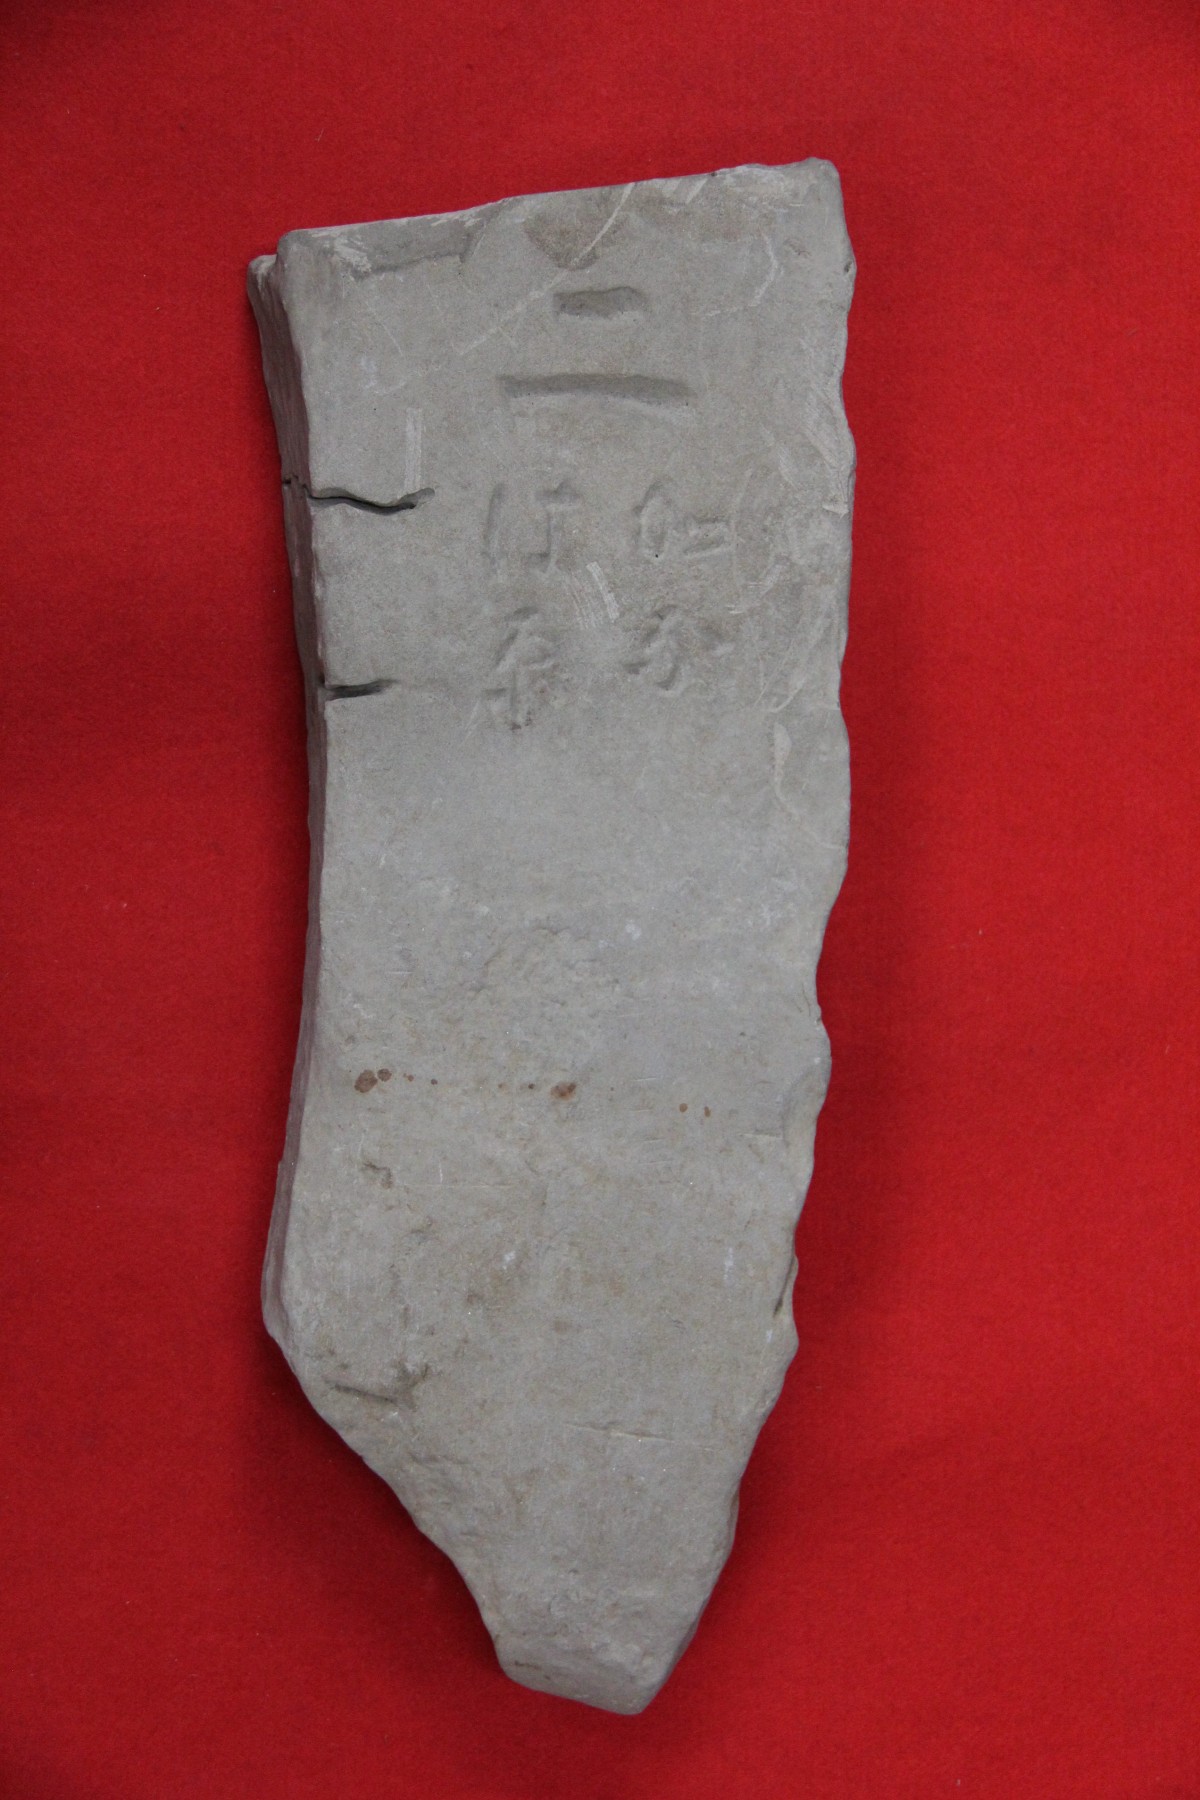 赤色の背景で「ニ かなは原」と彫られている印部石の写真